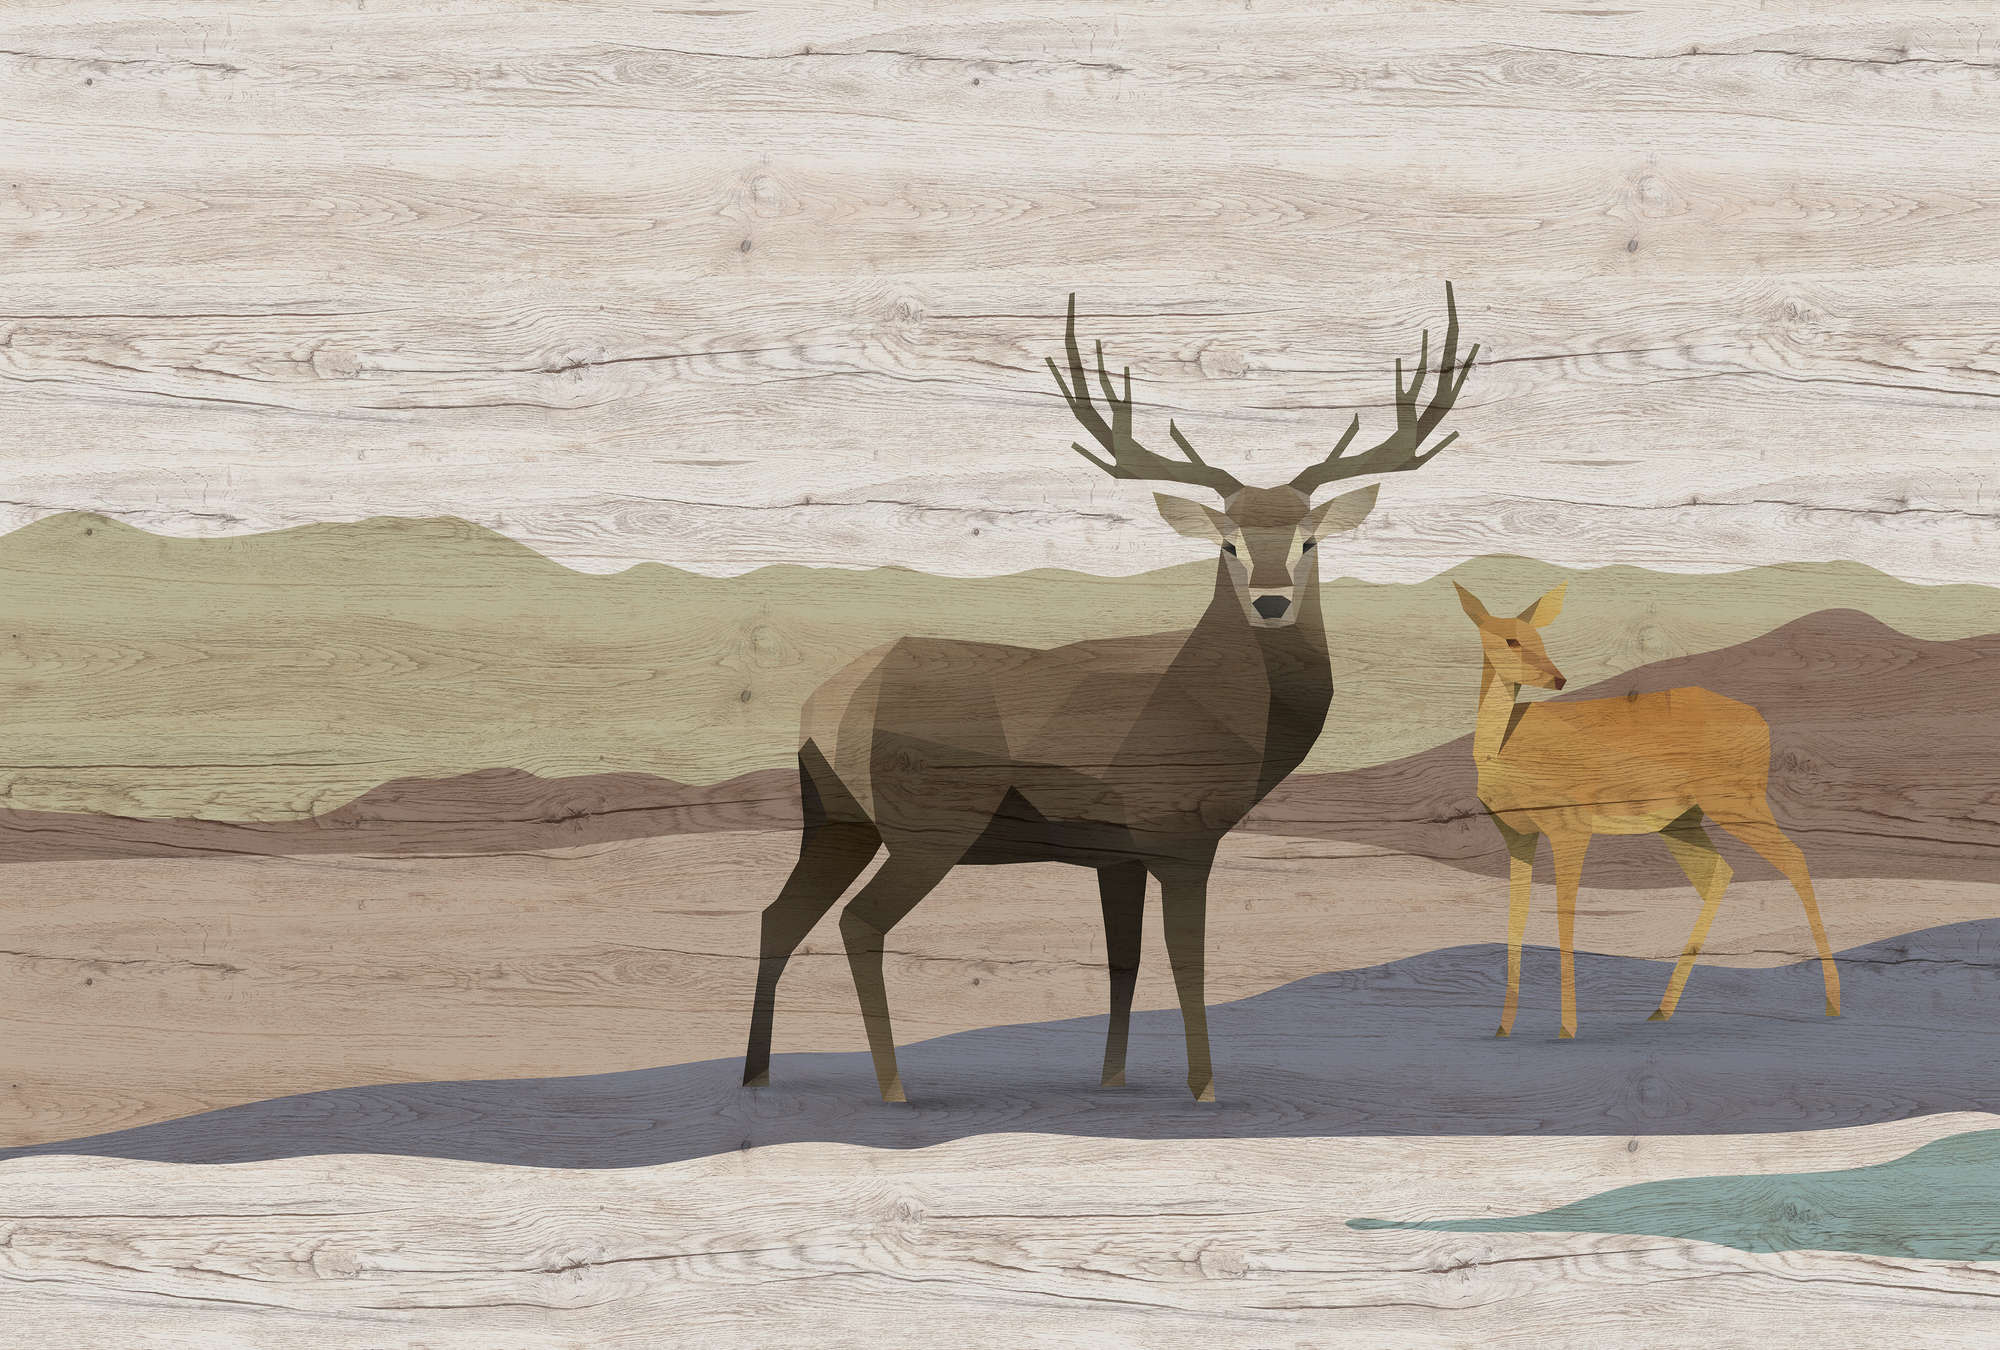             Yukon 2 - Carta da parati con venature del legno, disegno Cervo e Capriolo
        